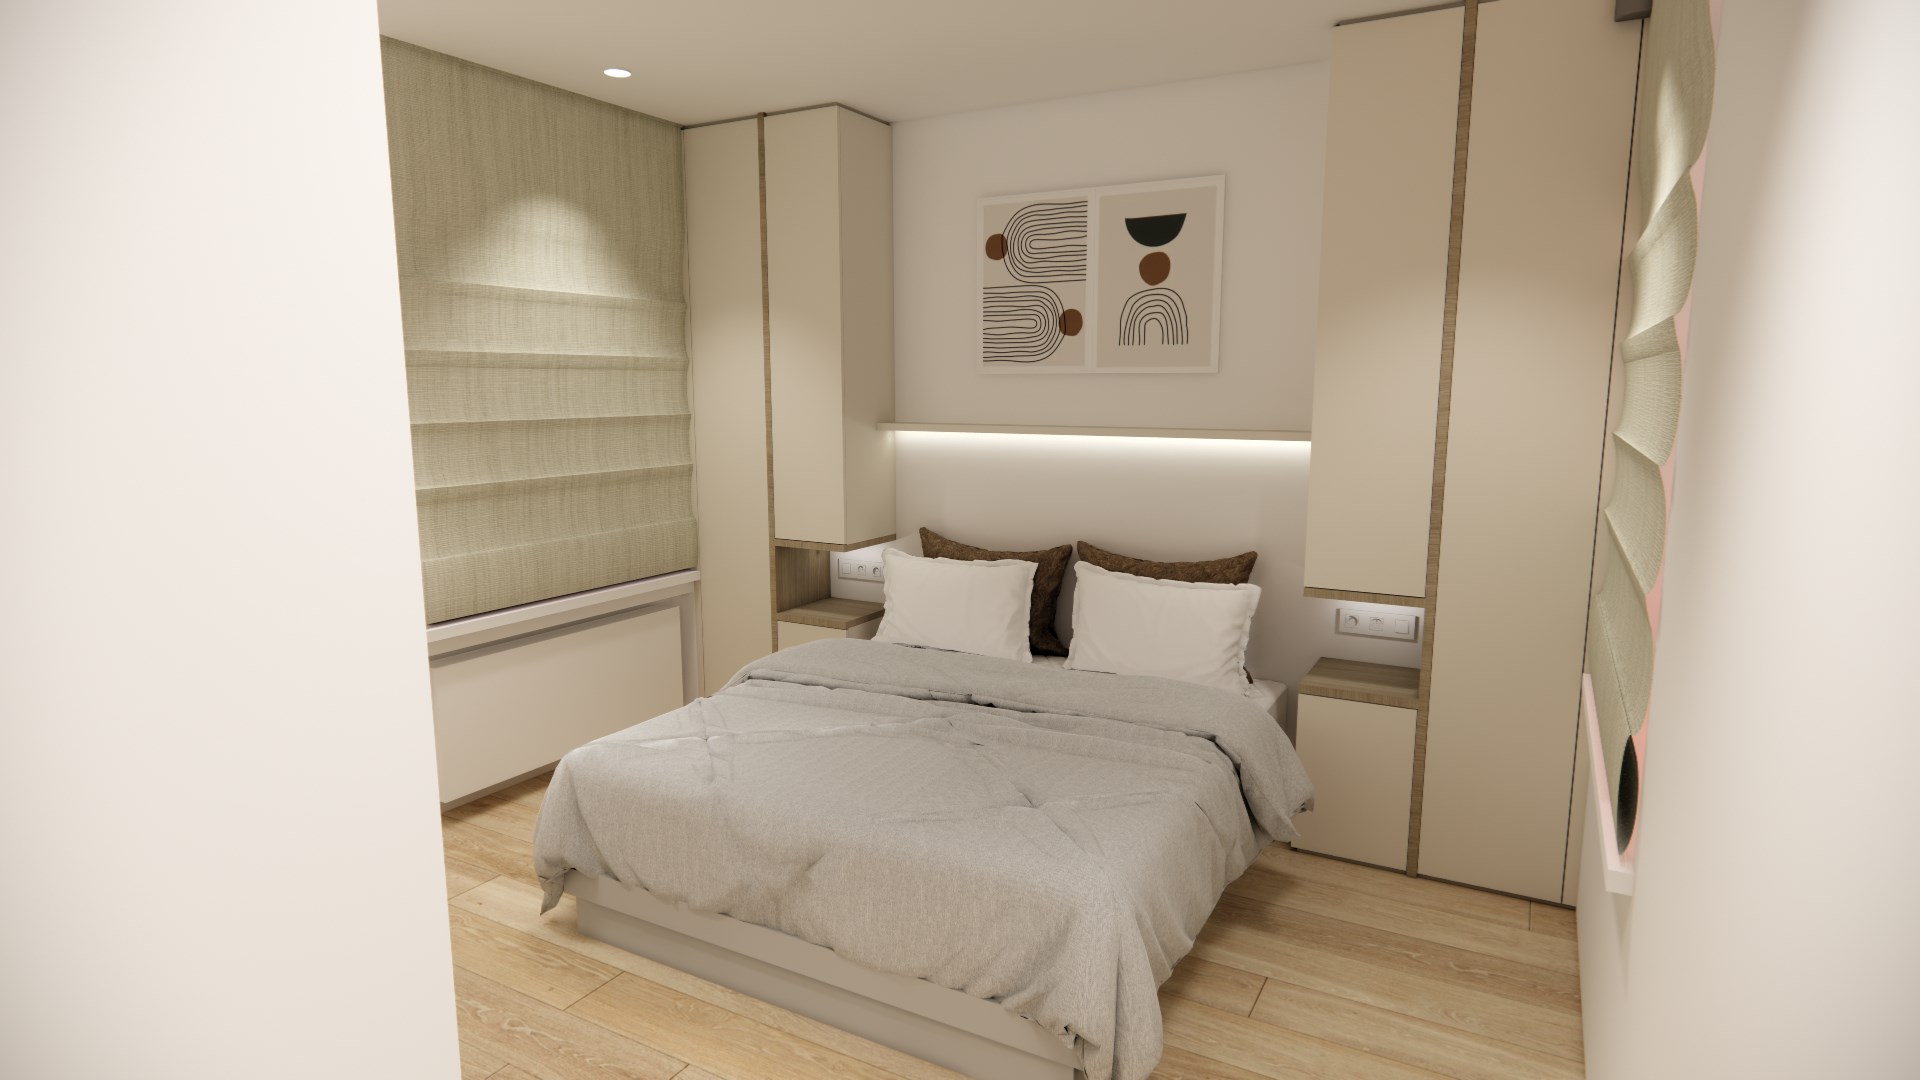 Volledig gerenoveerd appartement met 4 slaapkamers centraal gelegen in centrum van Knokke nabij de Dumortierlaan met zijdelings zeezicht. 